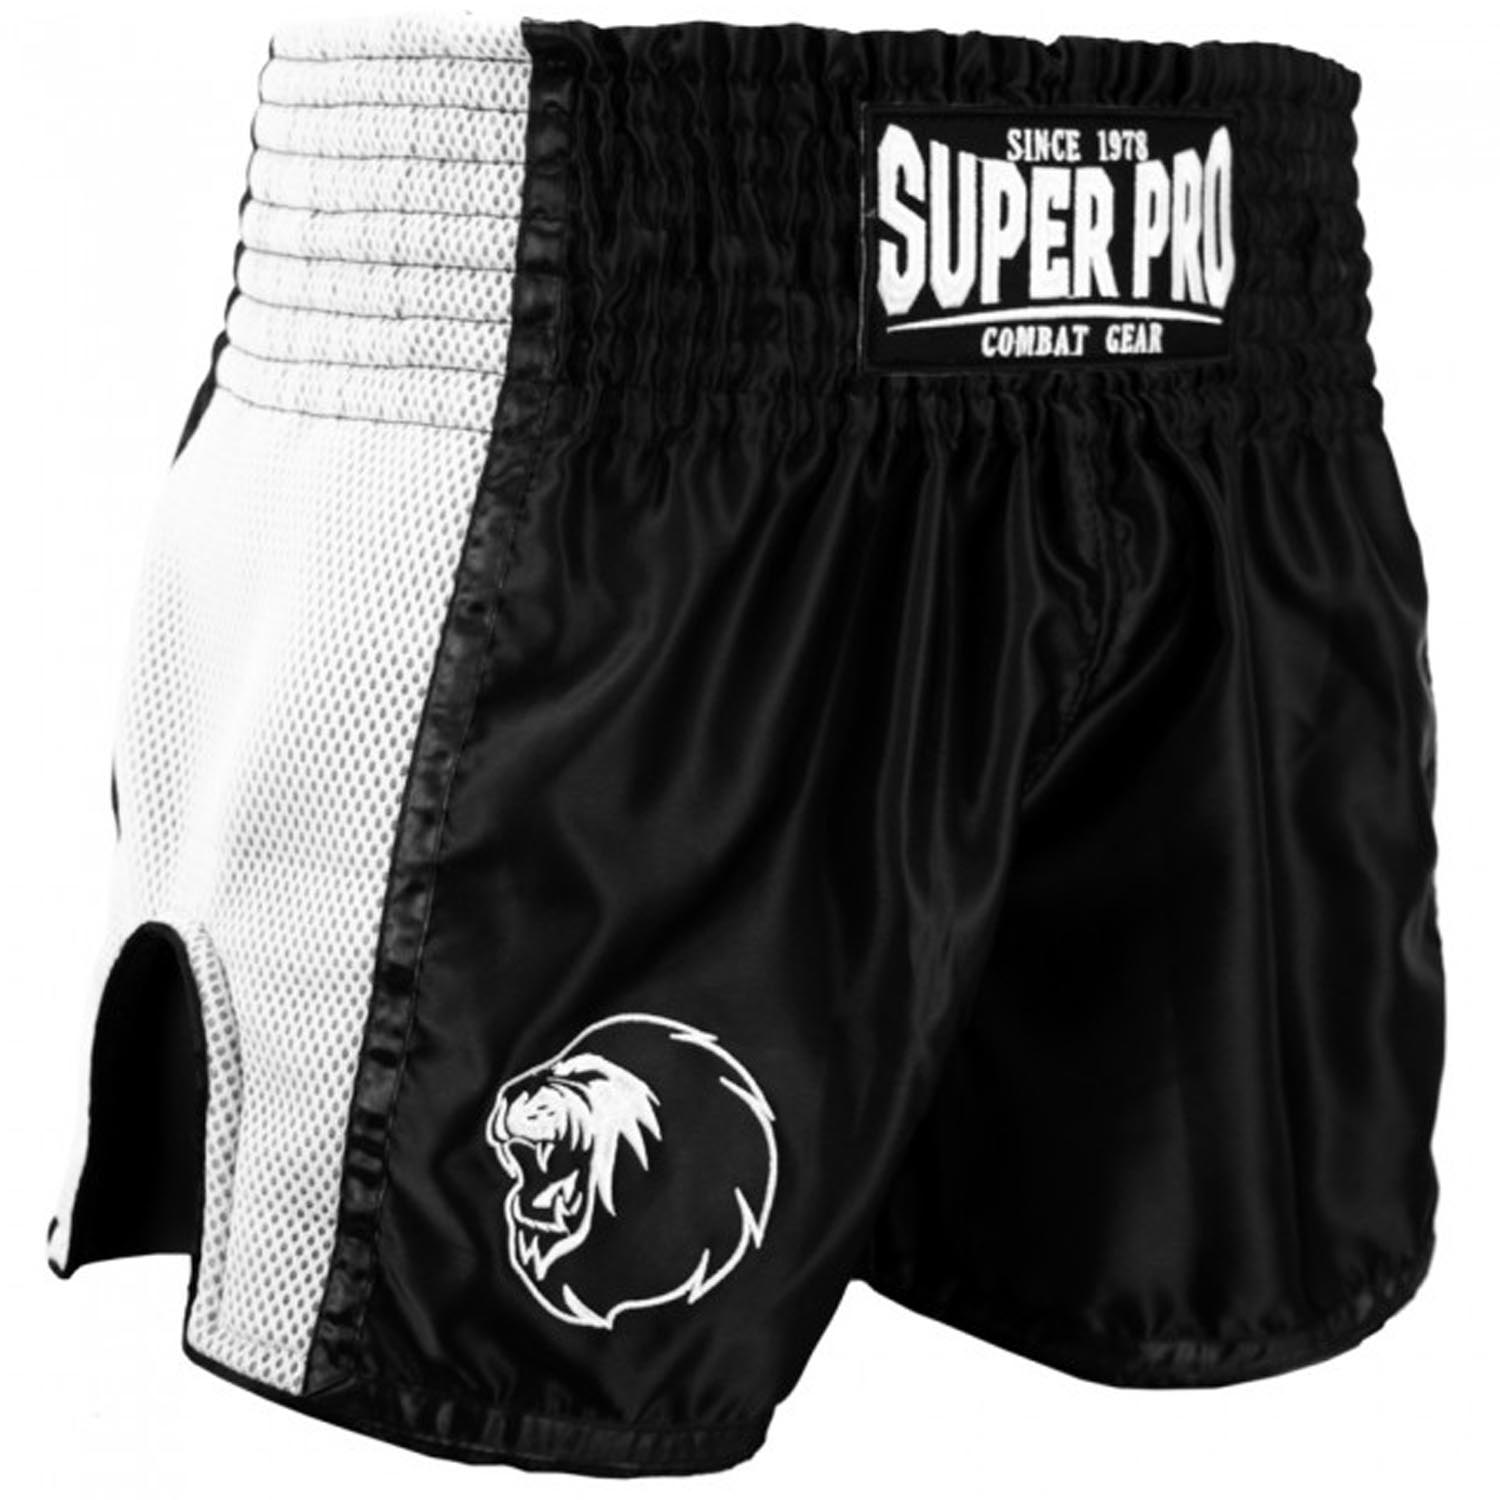 Super Pro Muay Thai Shorts, Brave, schwarz-weiß